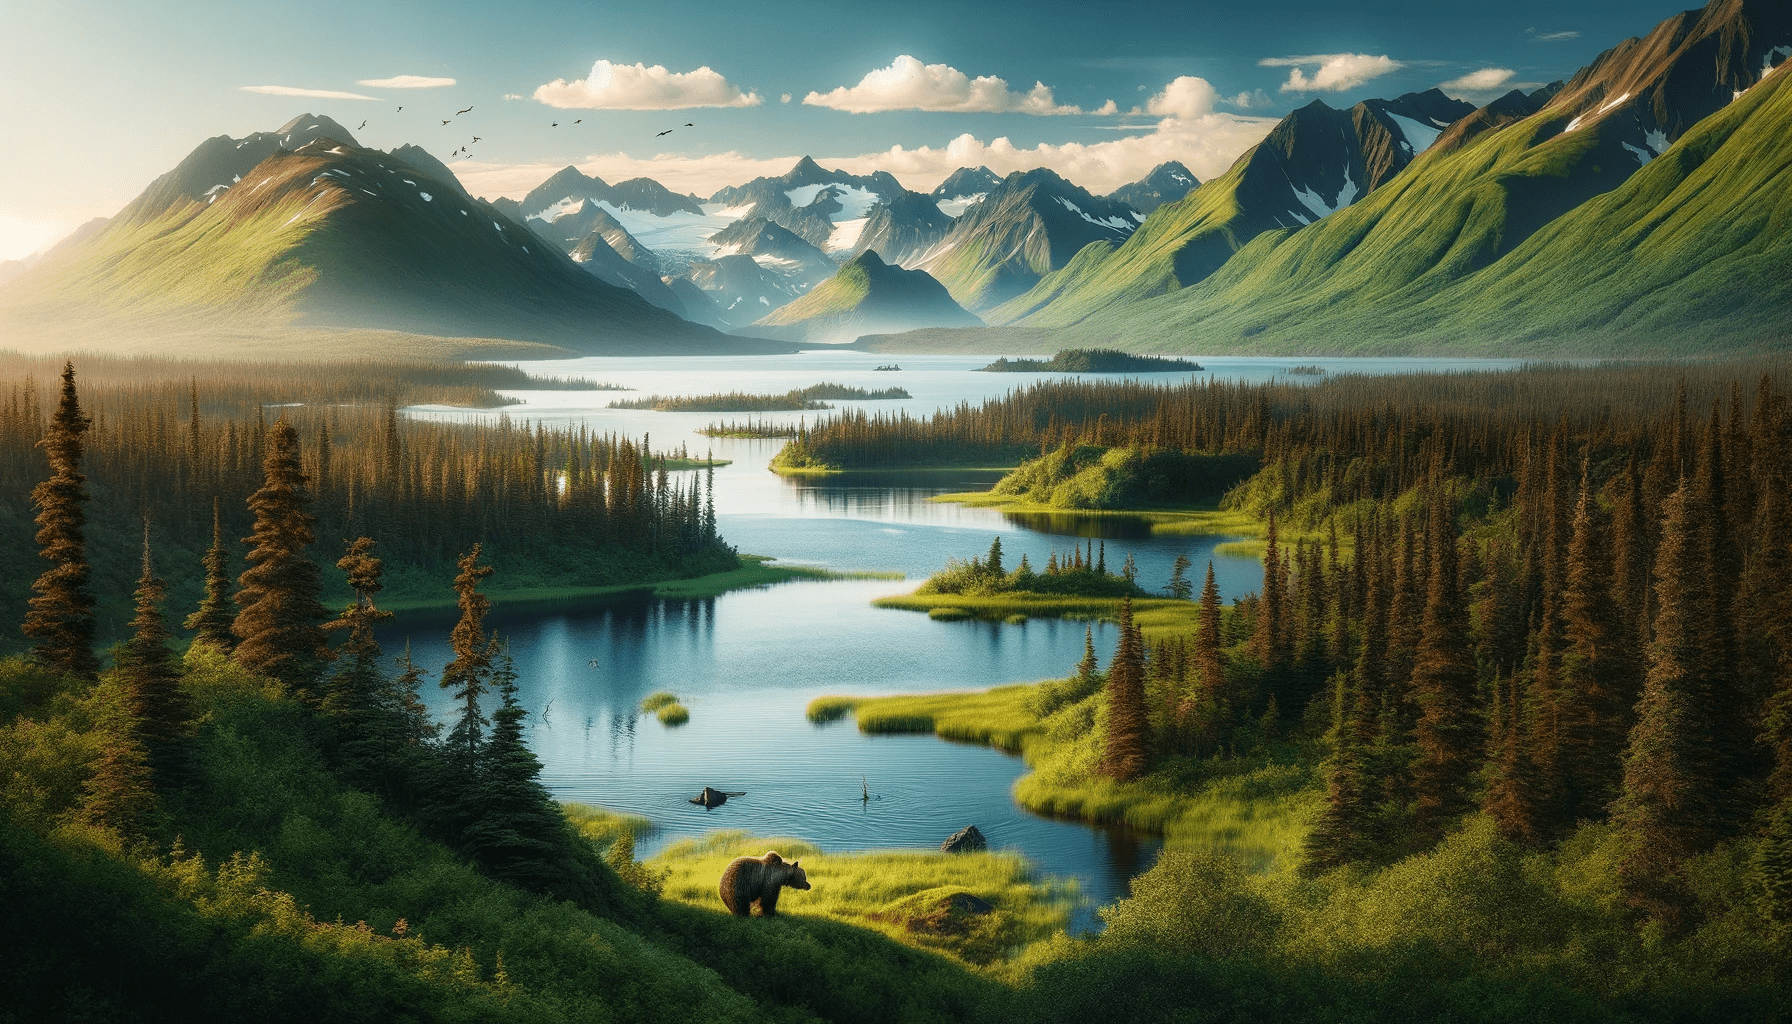 Lake Clark National Park and Preserve in Alaska.